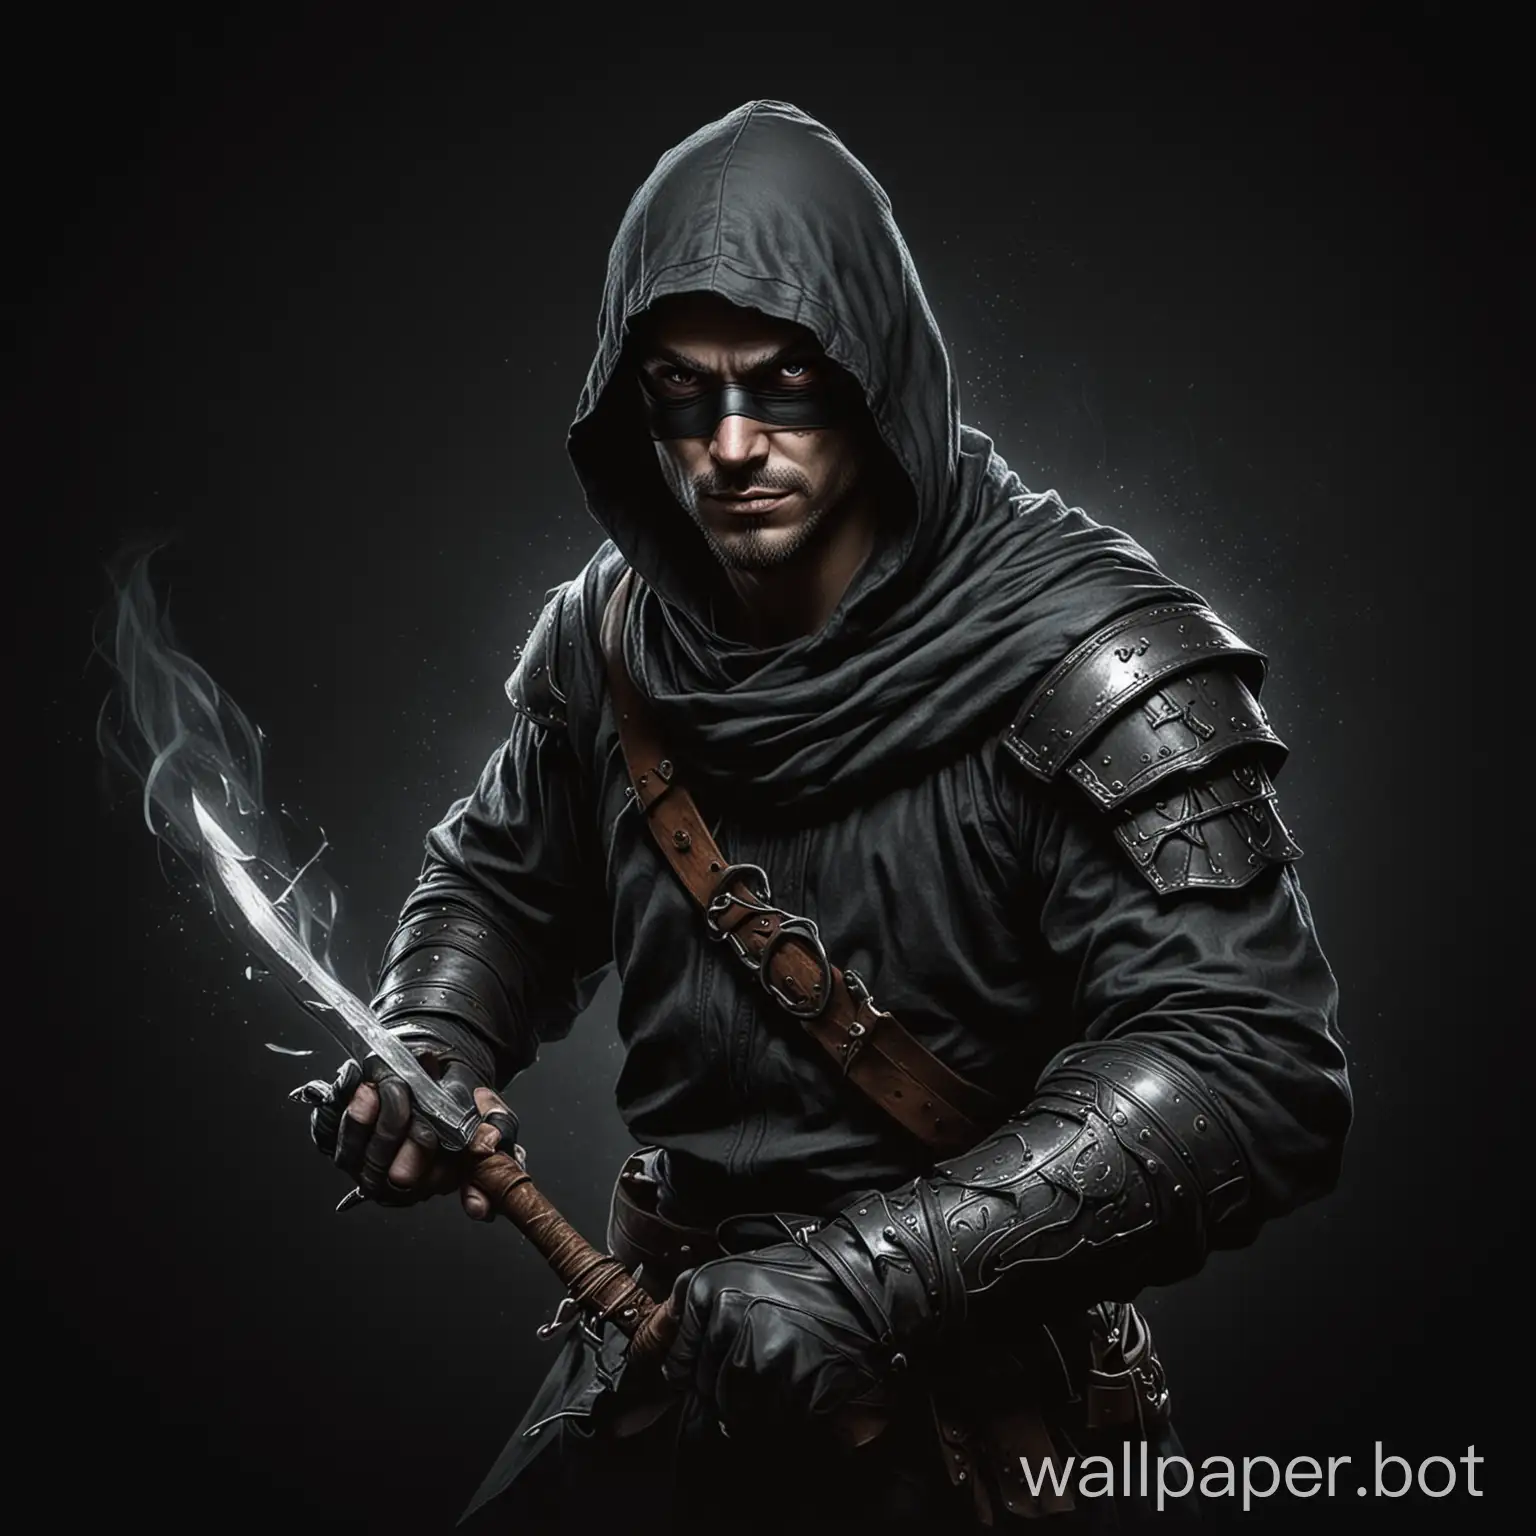 Draw a fantasy thief on a black background